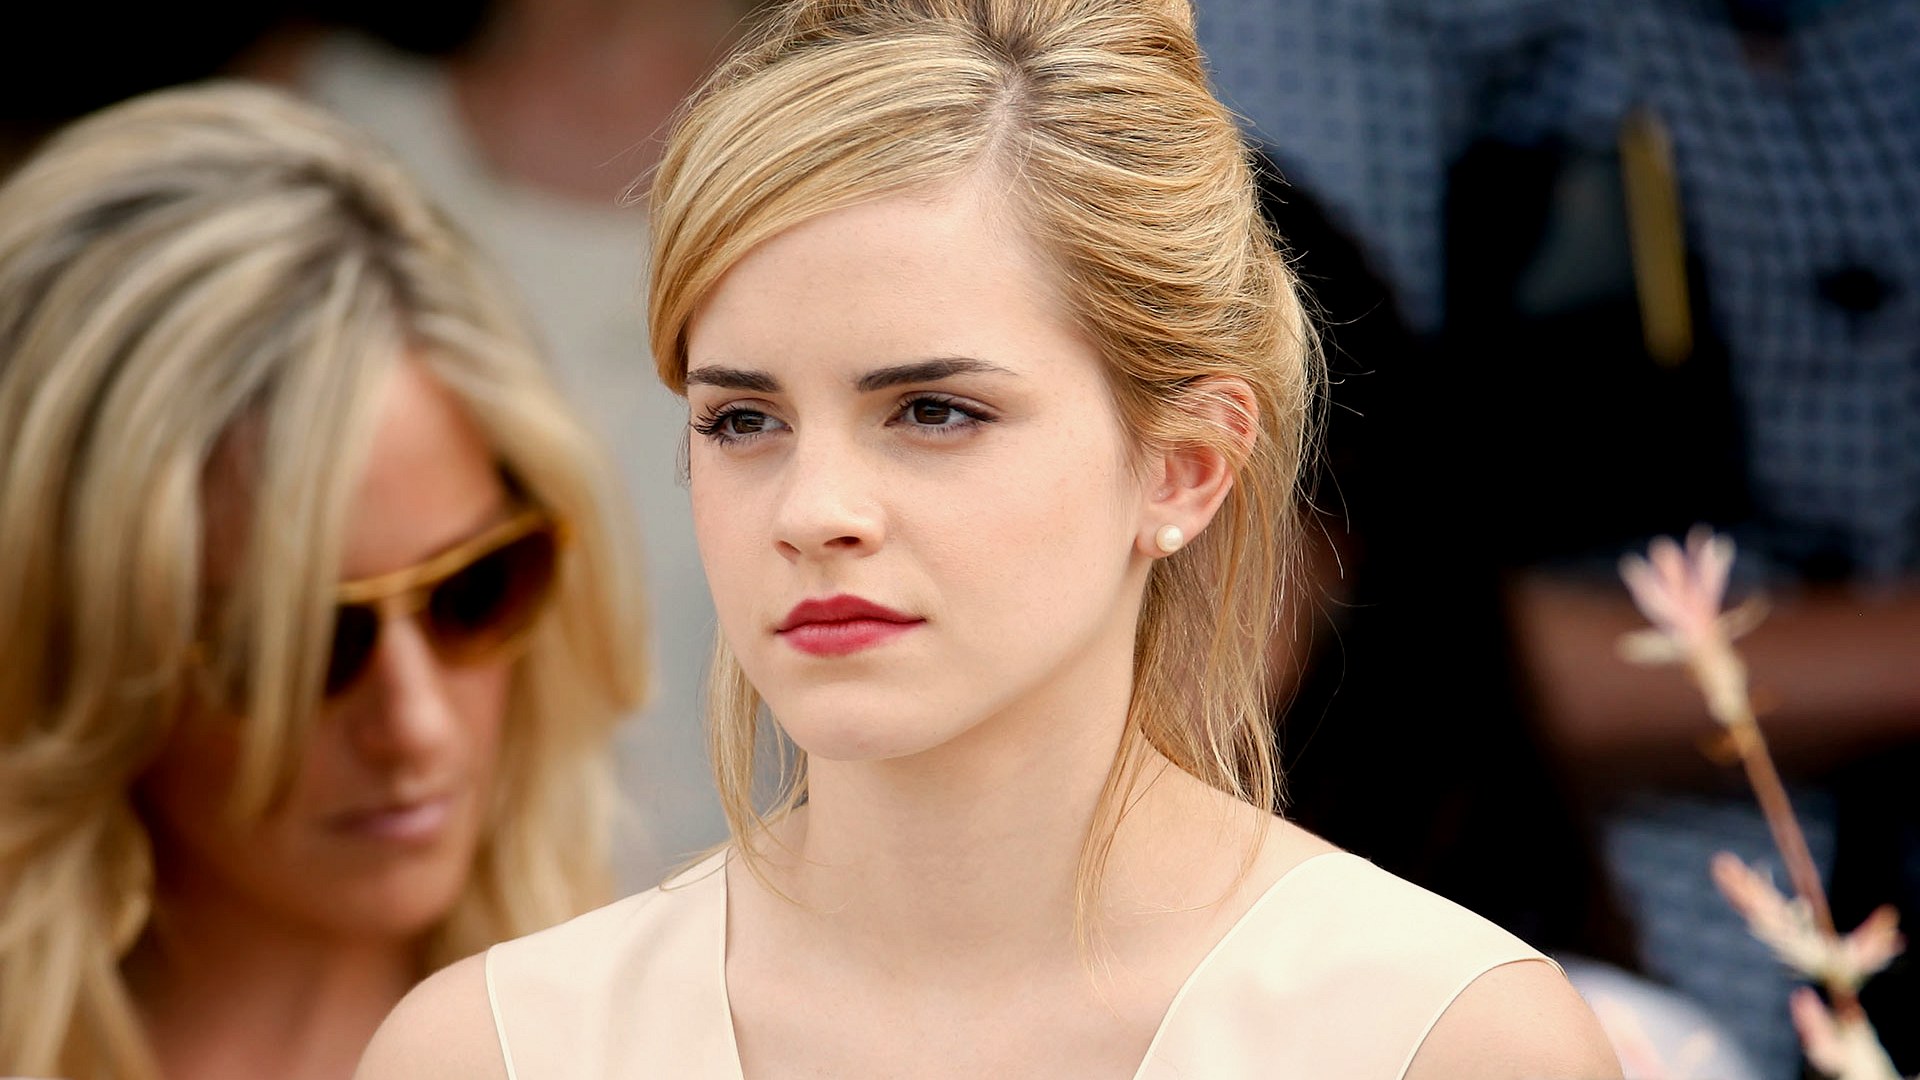 Emma-Watson